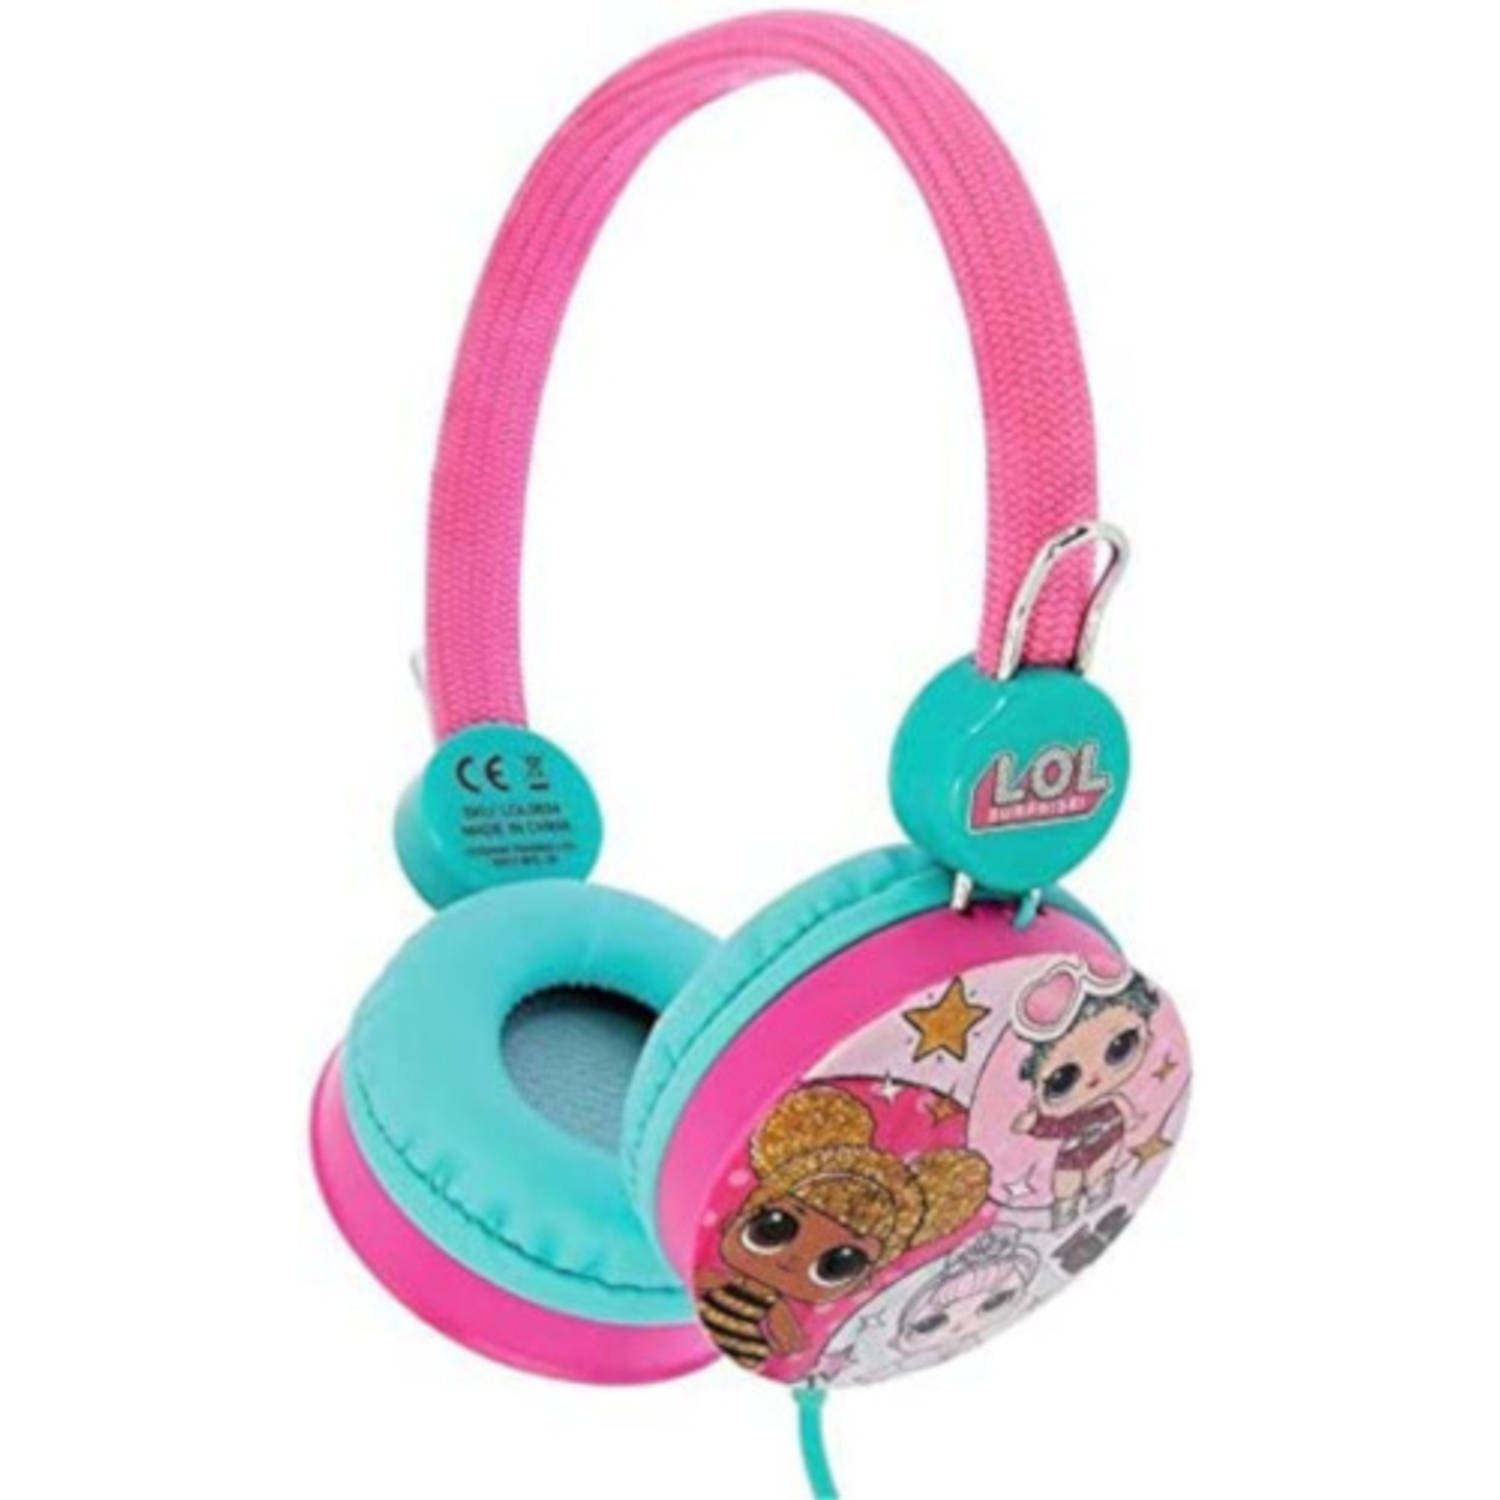 L.O.L. Surprise koptelefoon meisjes 90 cm roze-blauw